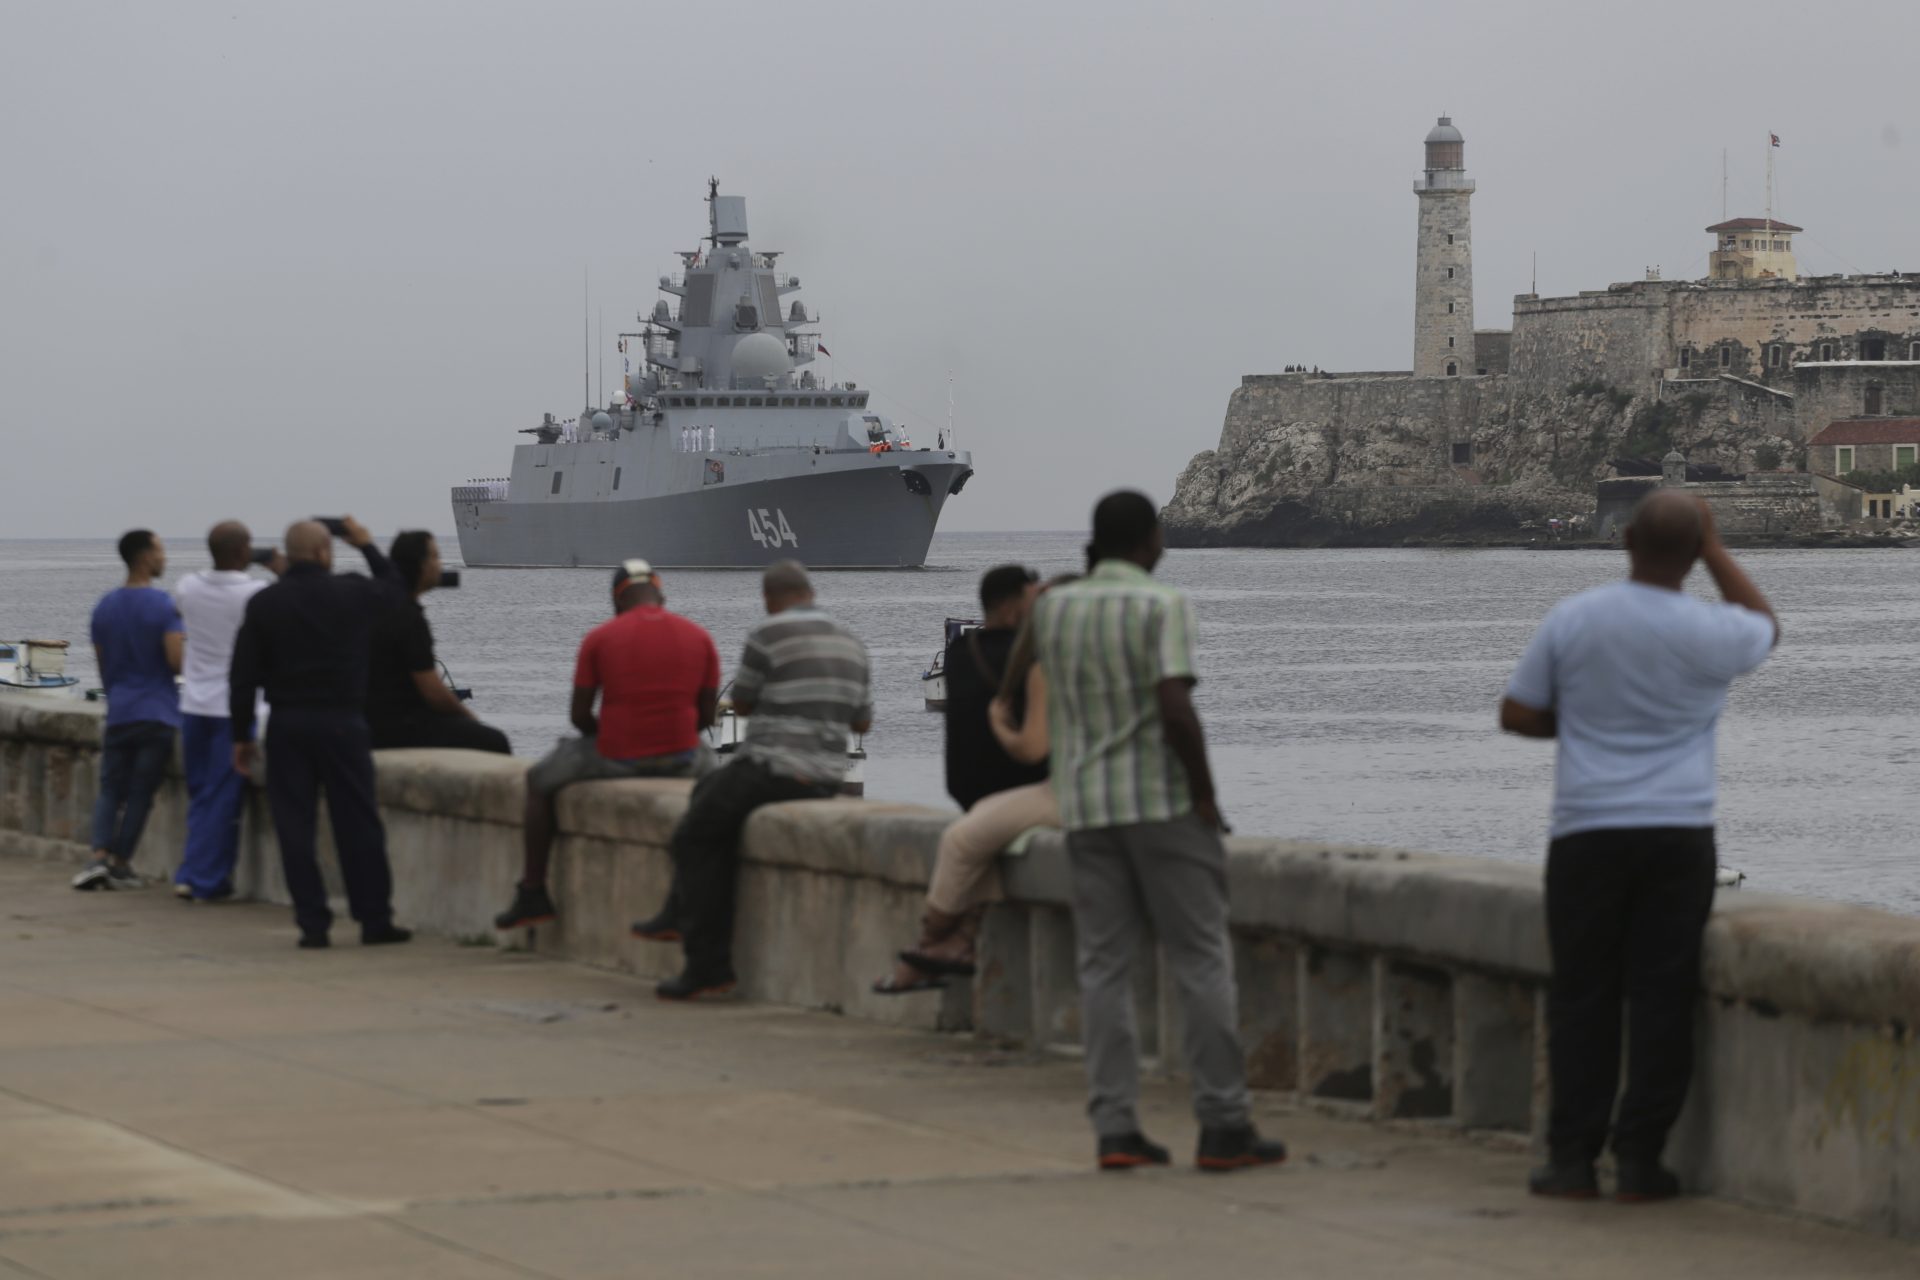 La flotte navale russe avec sous marin nucléaire arrive à Cuba